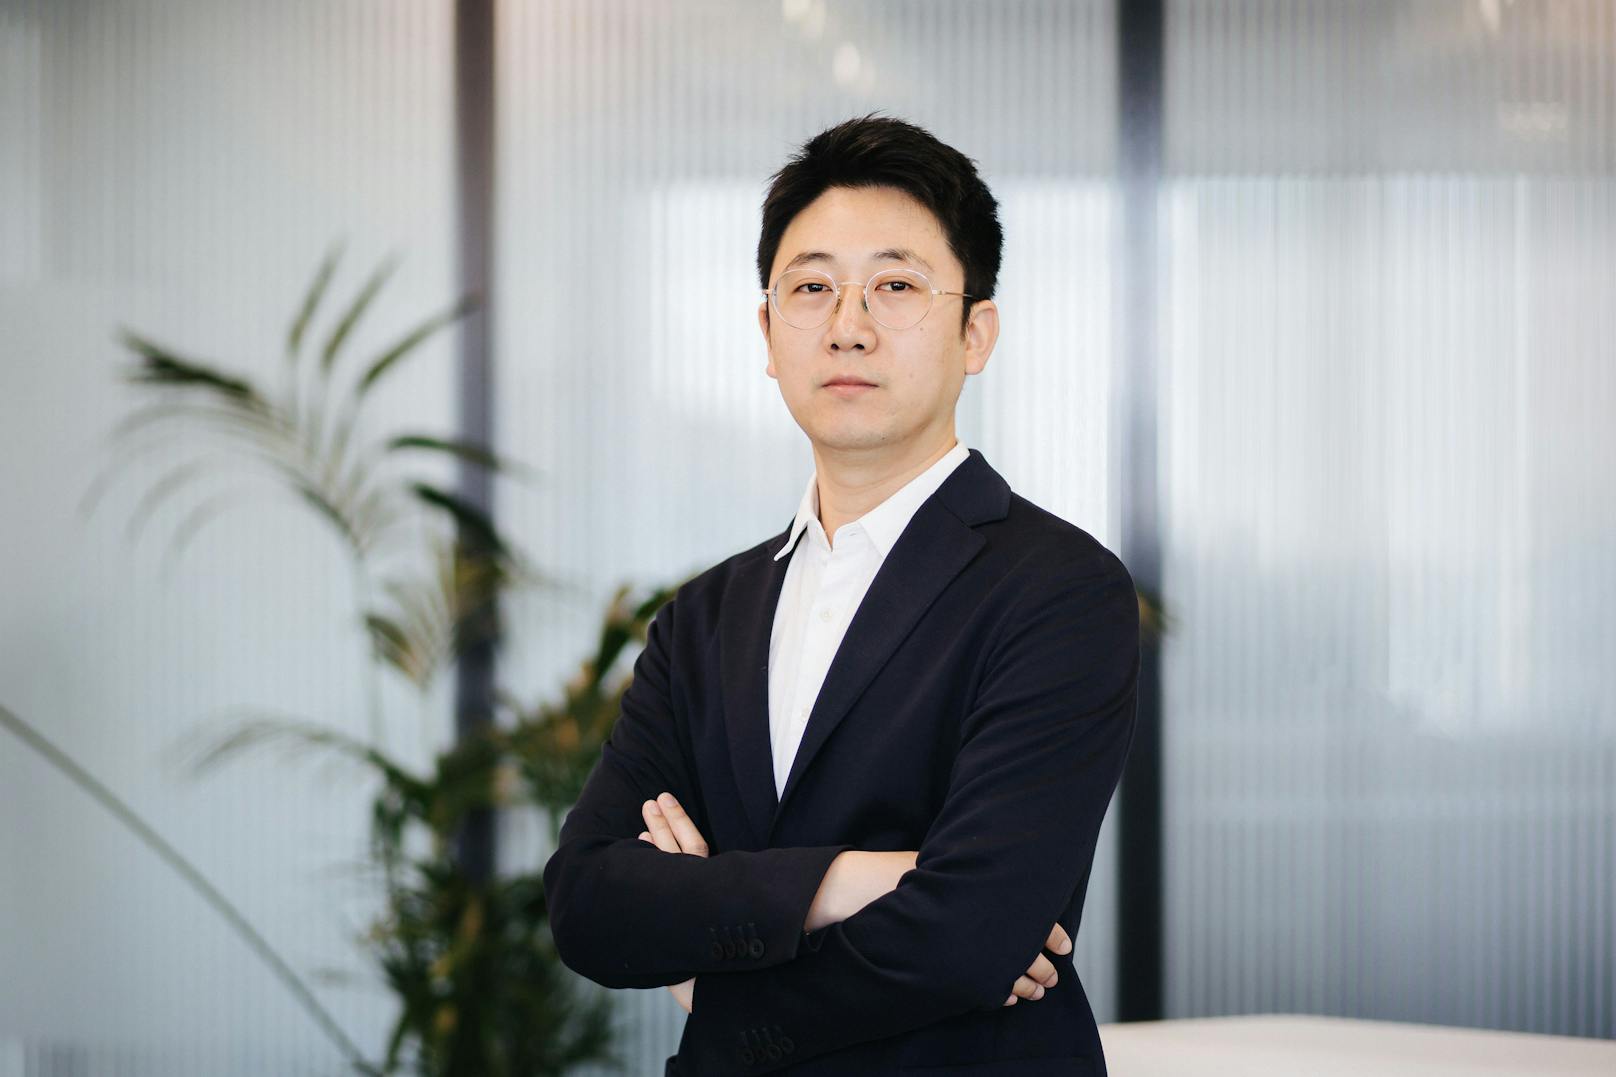 Matthew Wang übernimmt als General Manager die Führungsposition der Huawei Consumer Business Group (CBG) in Österreich.